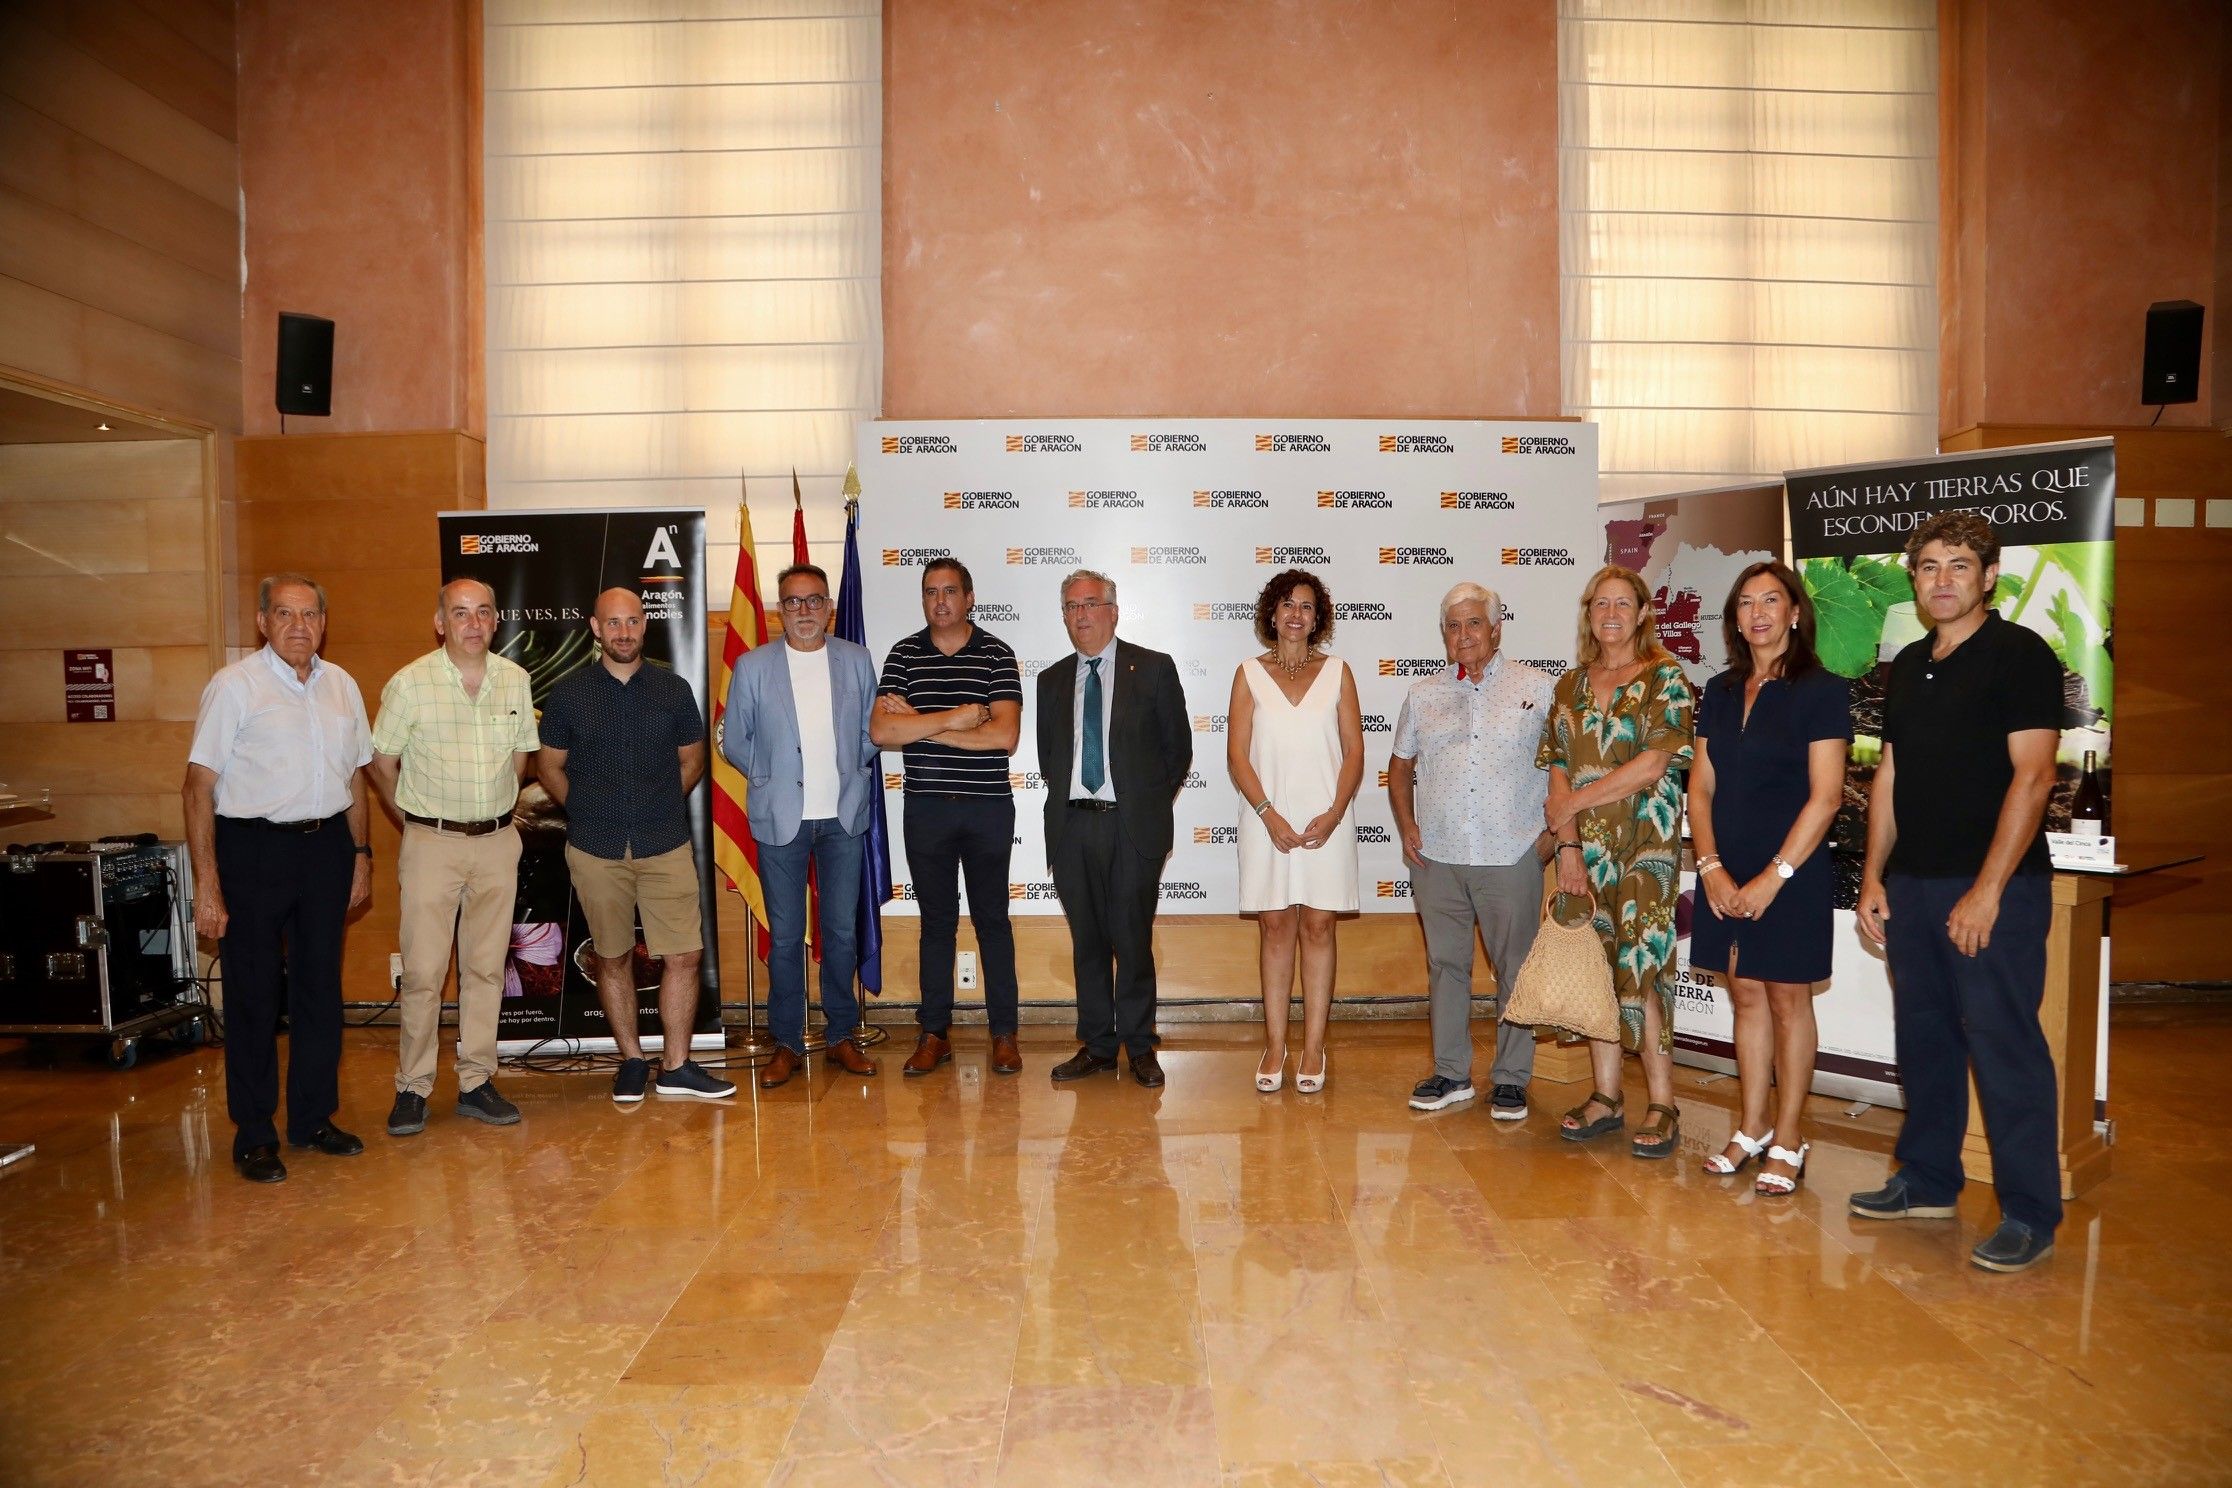 La Asociación de Vinos de la Tierra de Aragón cumple veinte años dando visibilidad al trabajo de pequeñas bodegas con Indicación Geográfica Protegida